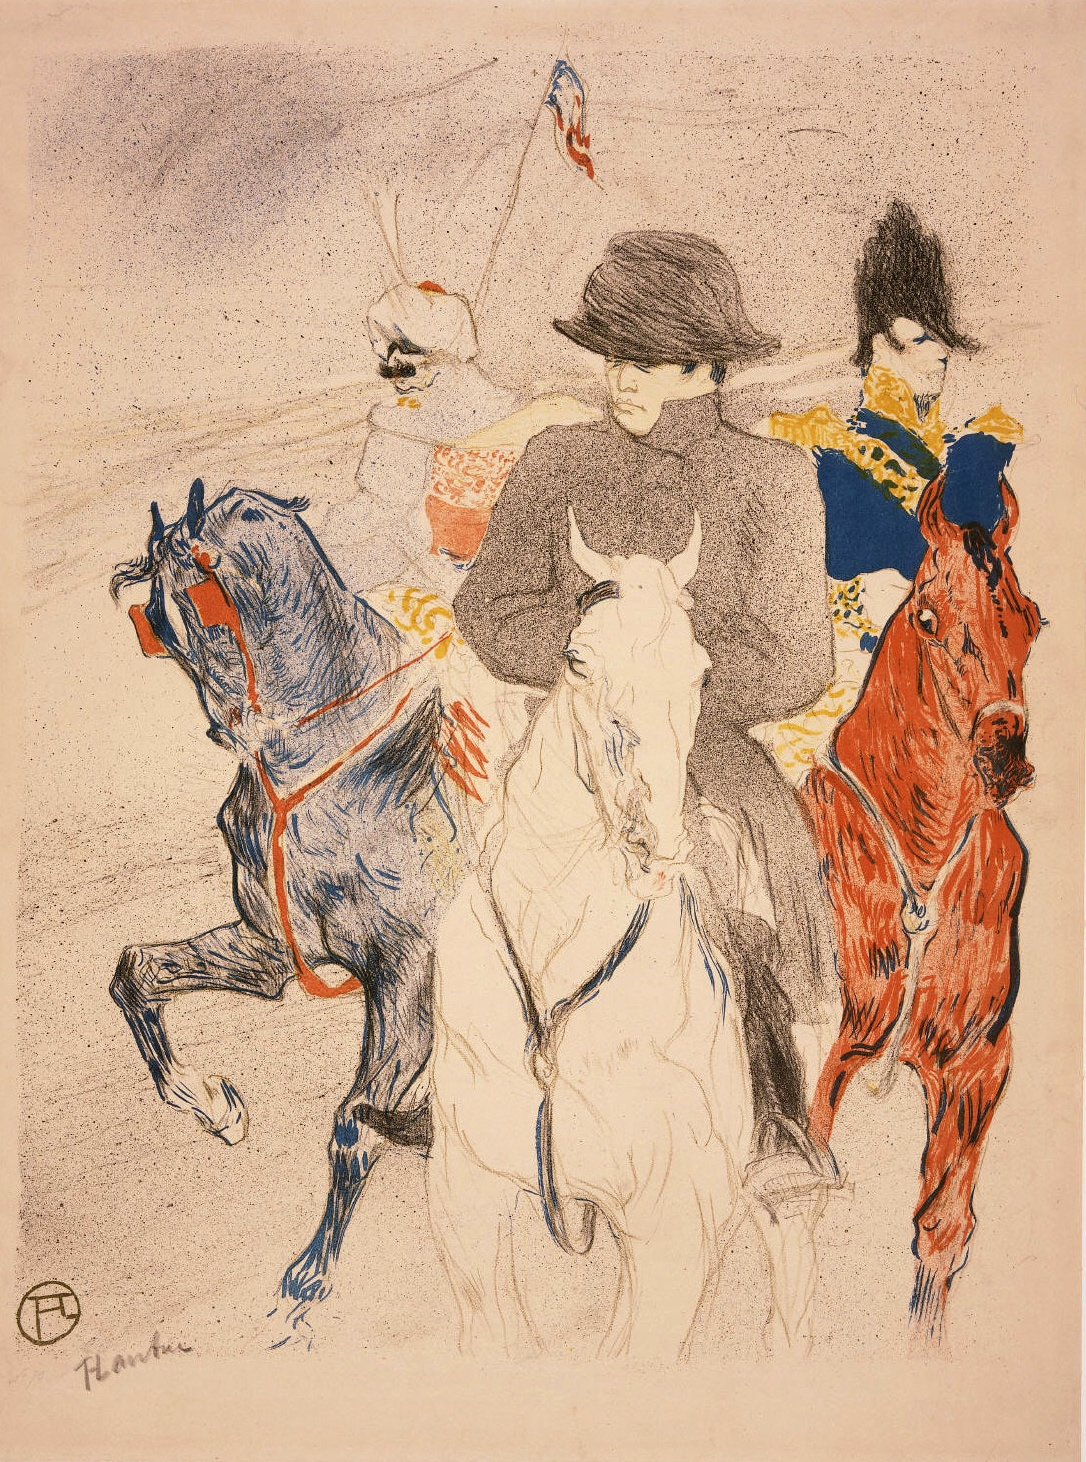 Henri+de+Toulouse+Lautrec-1864-1901 (96).jpg